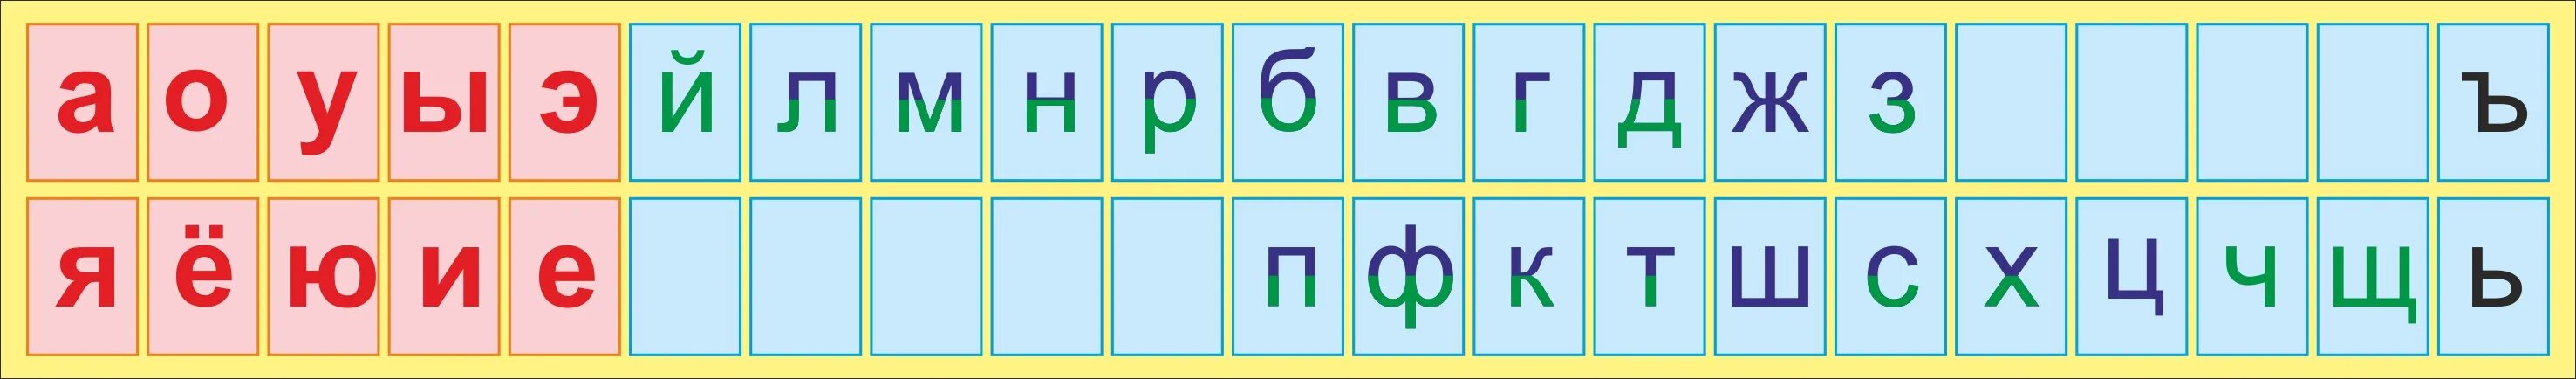 Звуки детей в классе. Алфавит гласные и согласные буквы. Лента букв. Русский алфавит с гласными и согласными буквами. Азбука гласных и согласных букв.